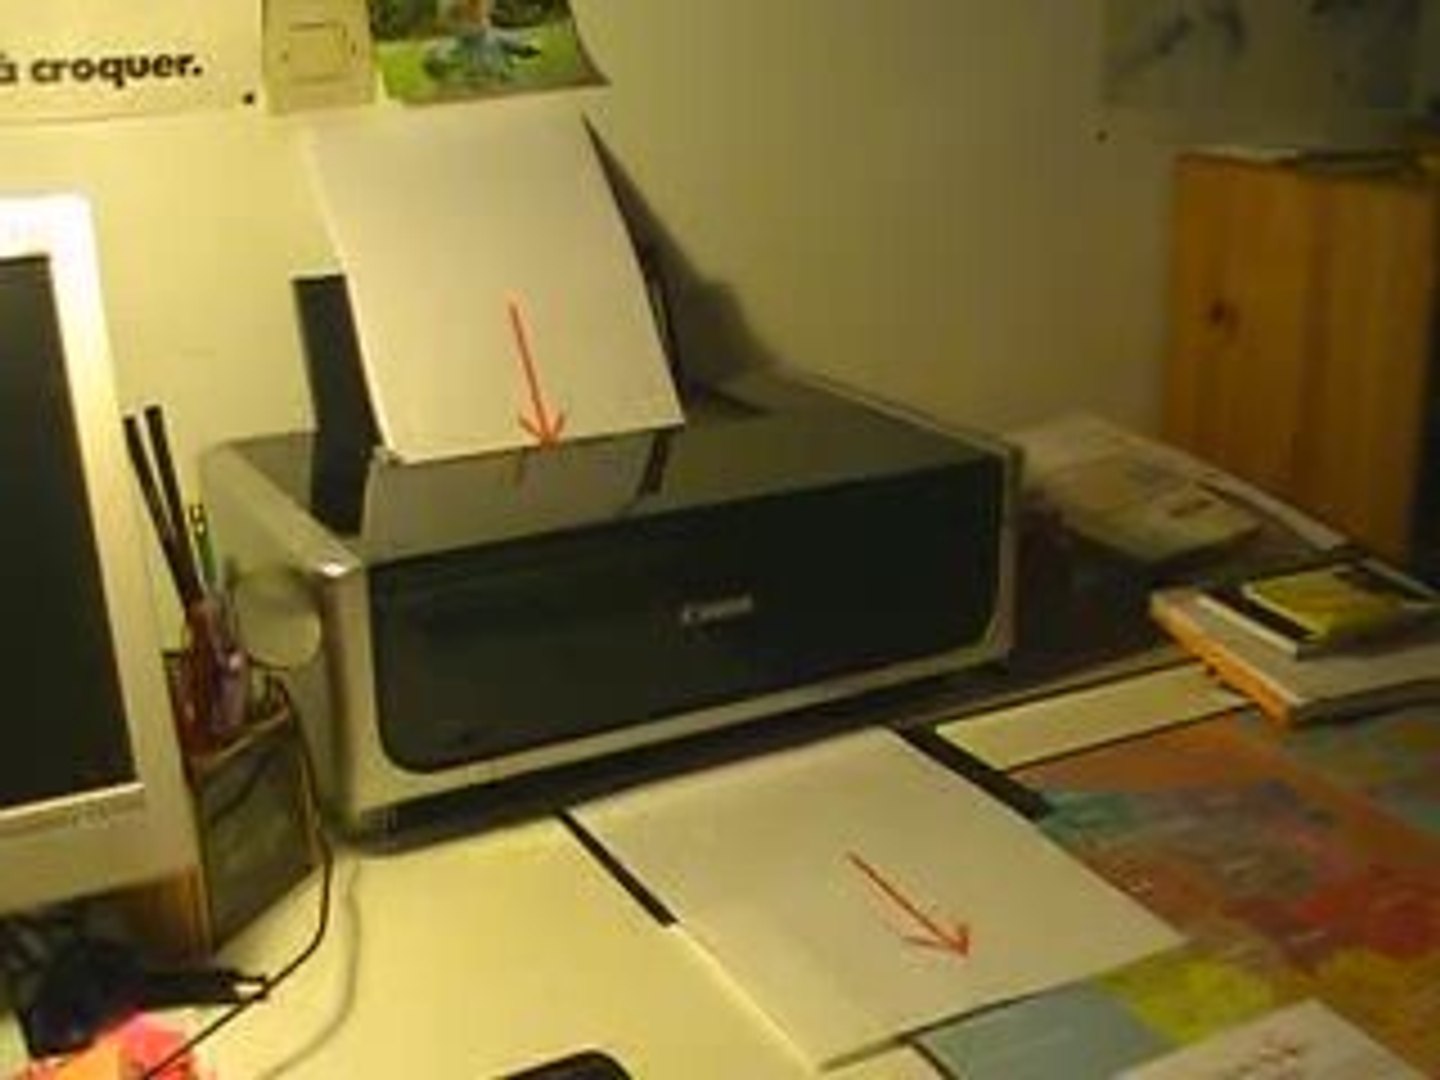 Comment bien placer son papier dans l'imprimante - Vidéo Dailymotion